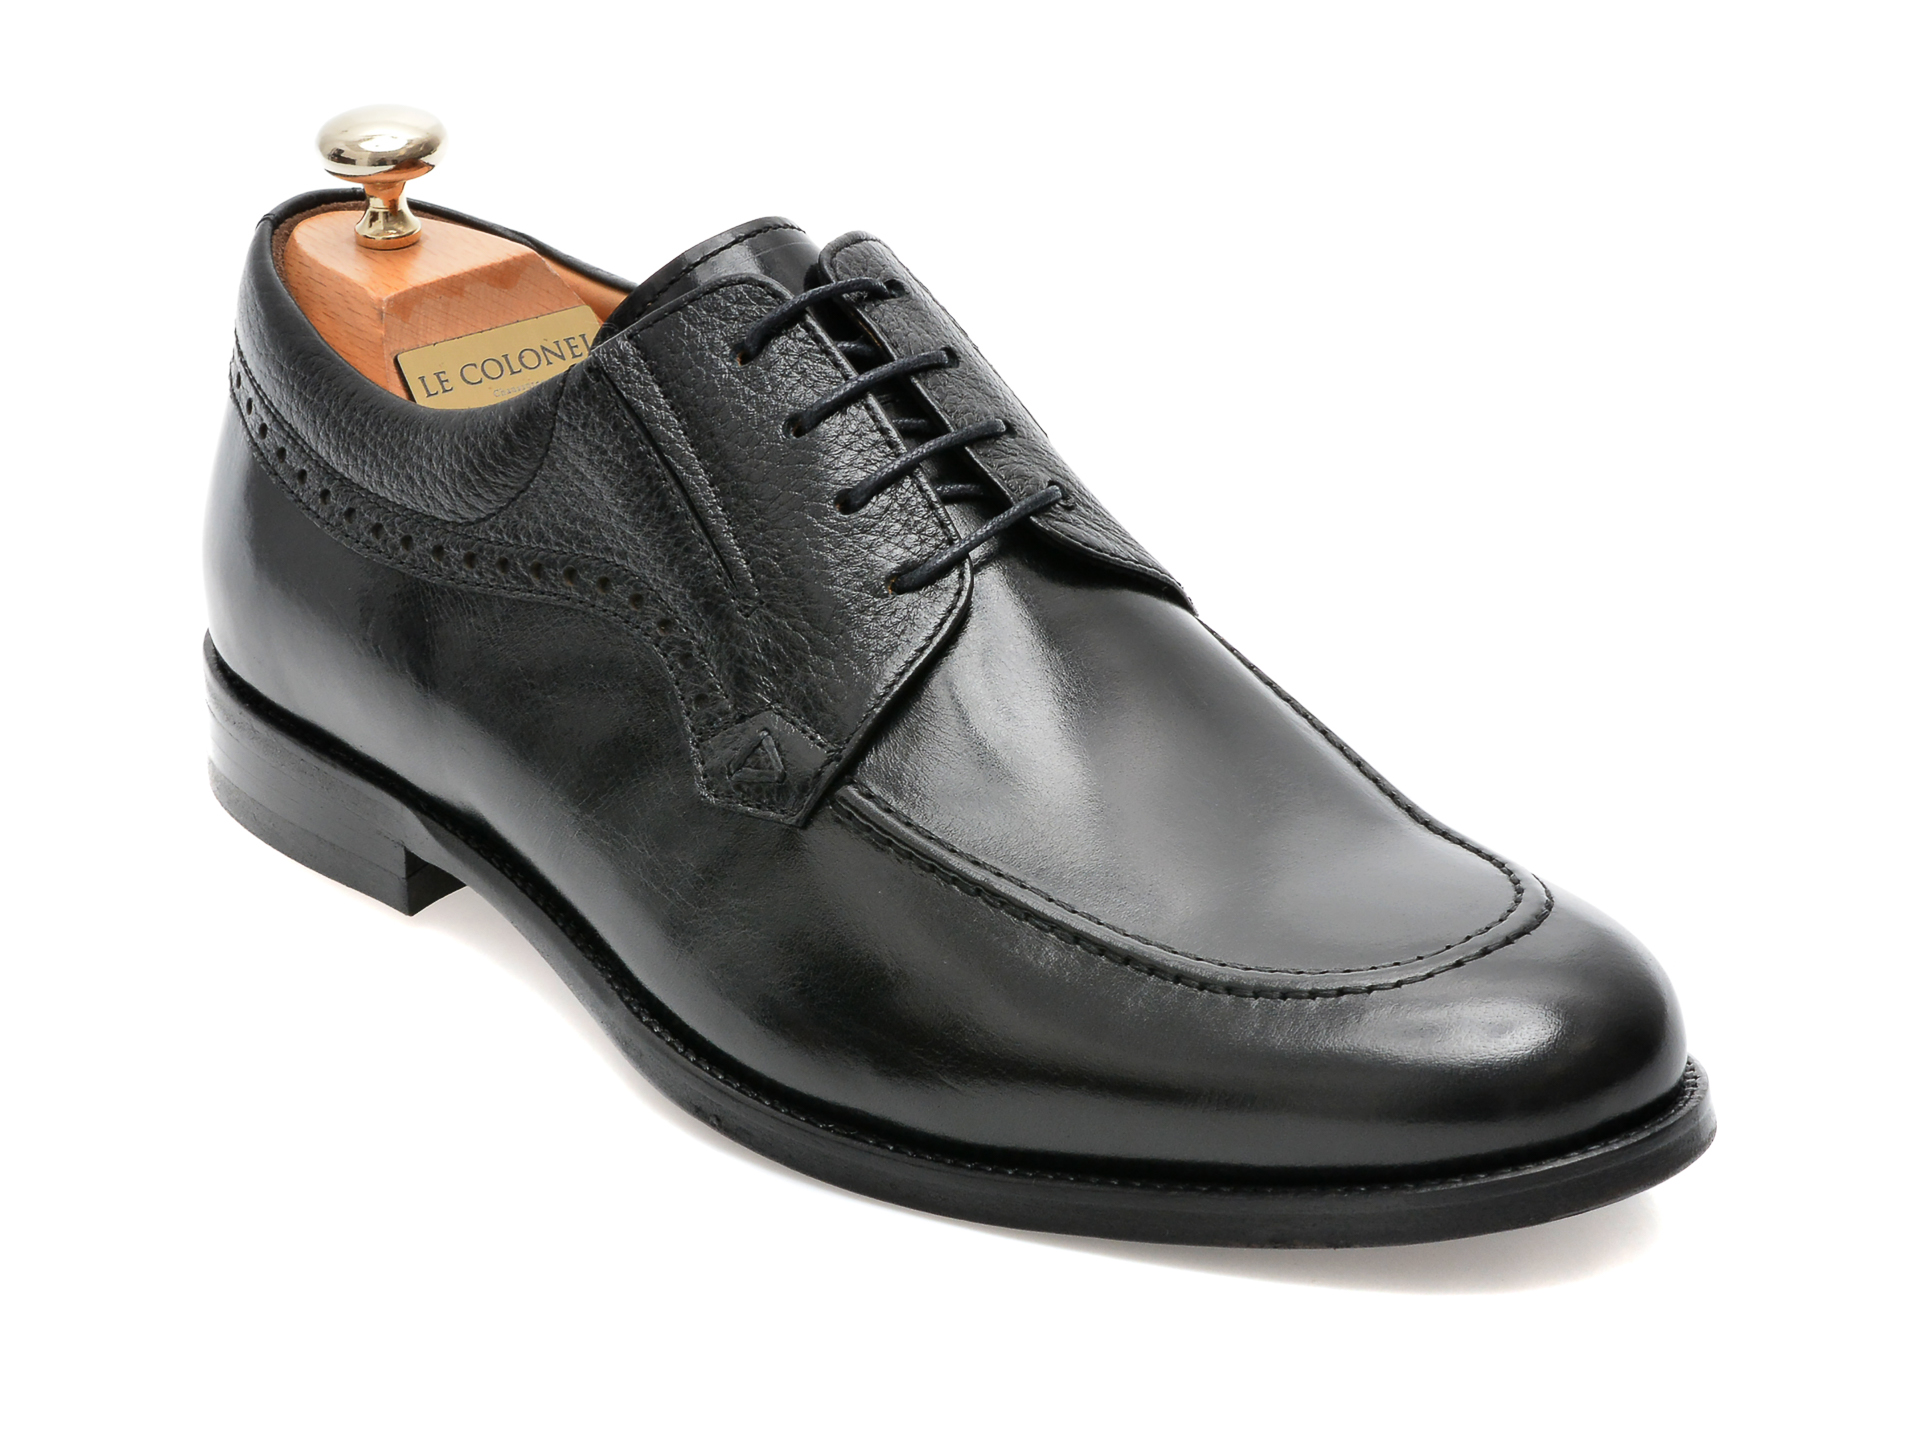 Pantofi LE COLONEL negri, 44746, din piele naturala Le Colonel Le Colonel